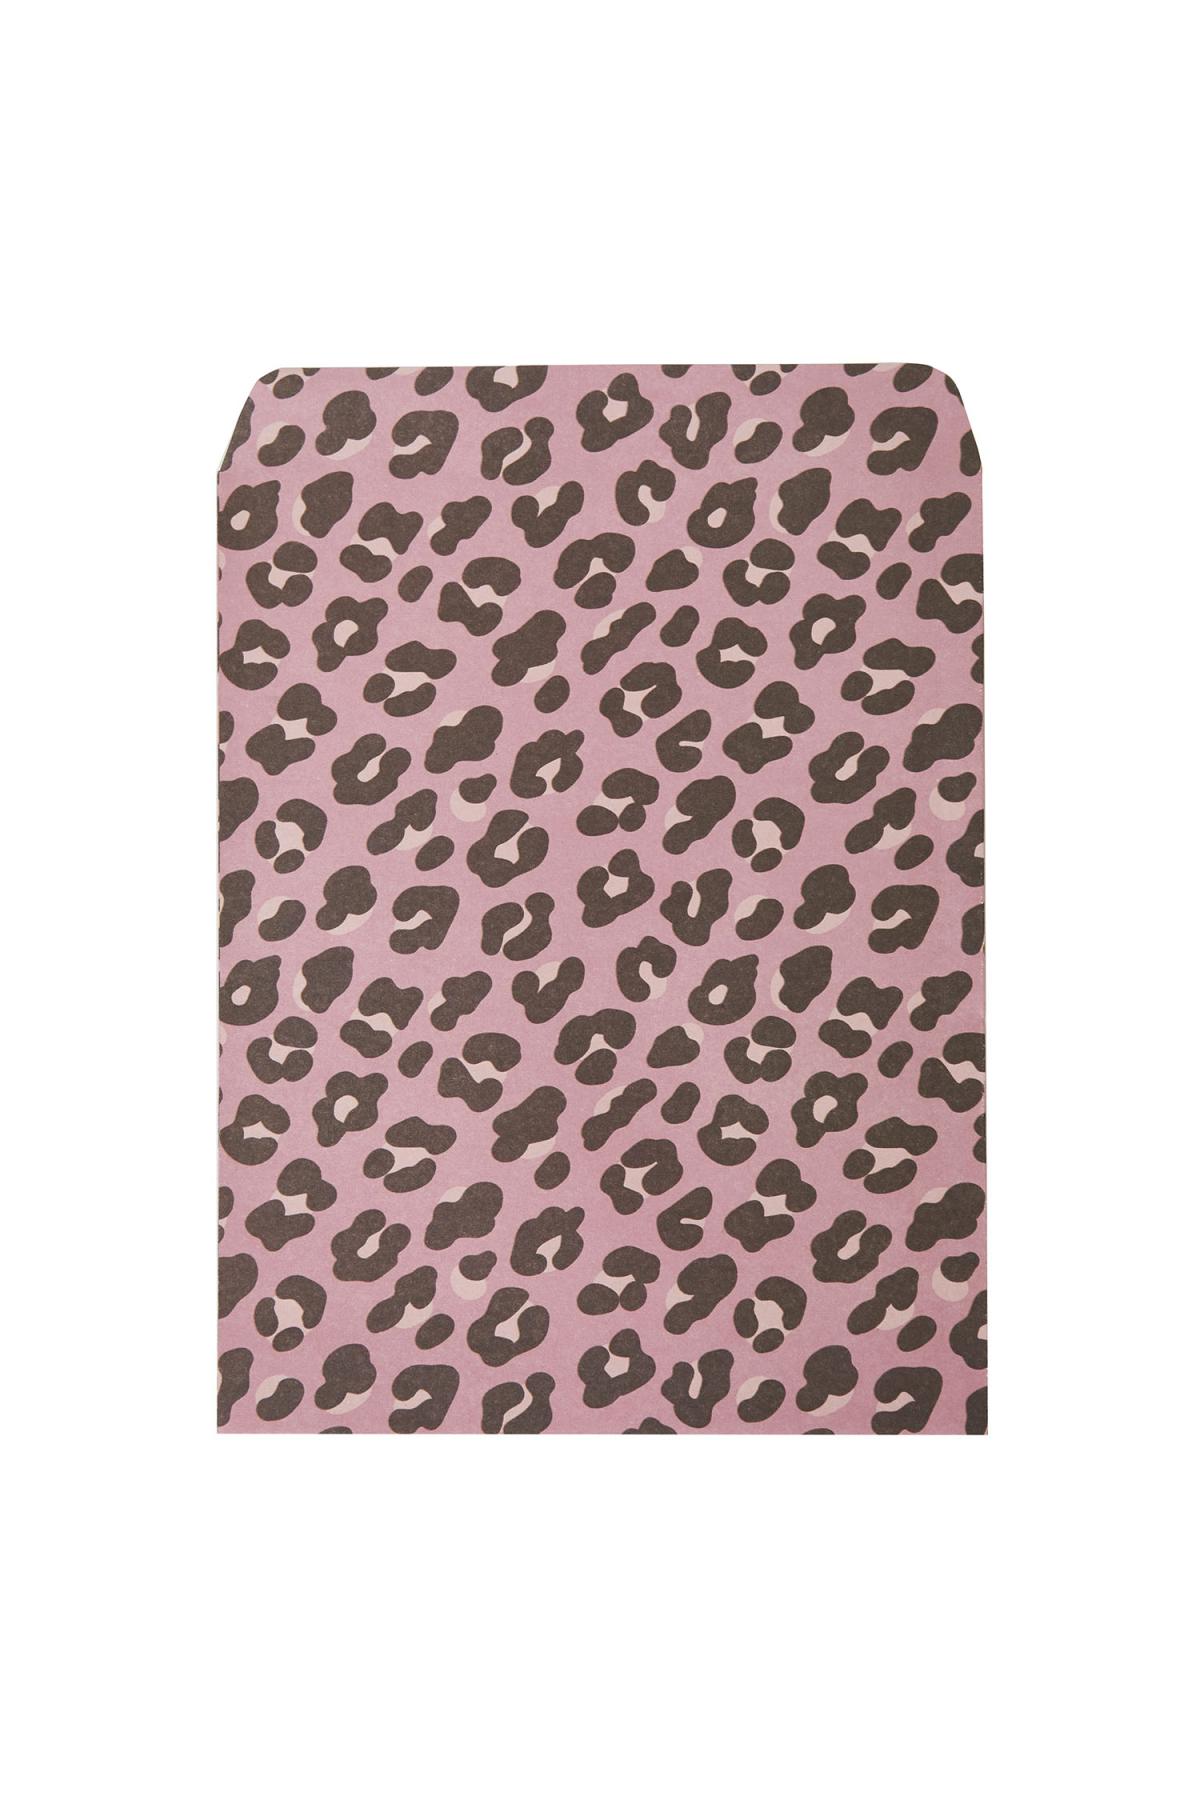 Gift Bag Pink Leopard Large Rosa Papier